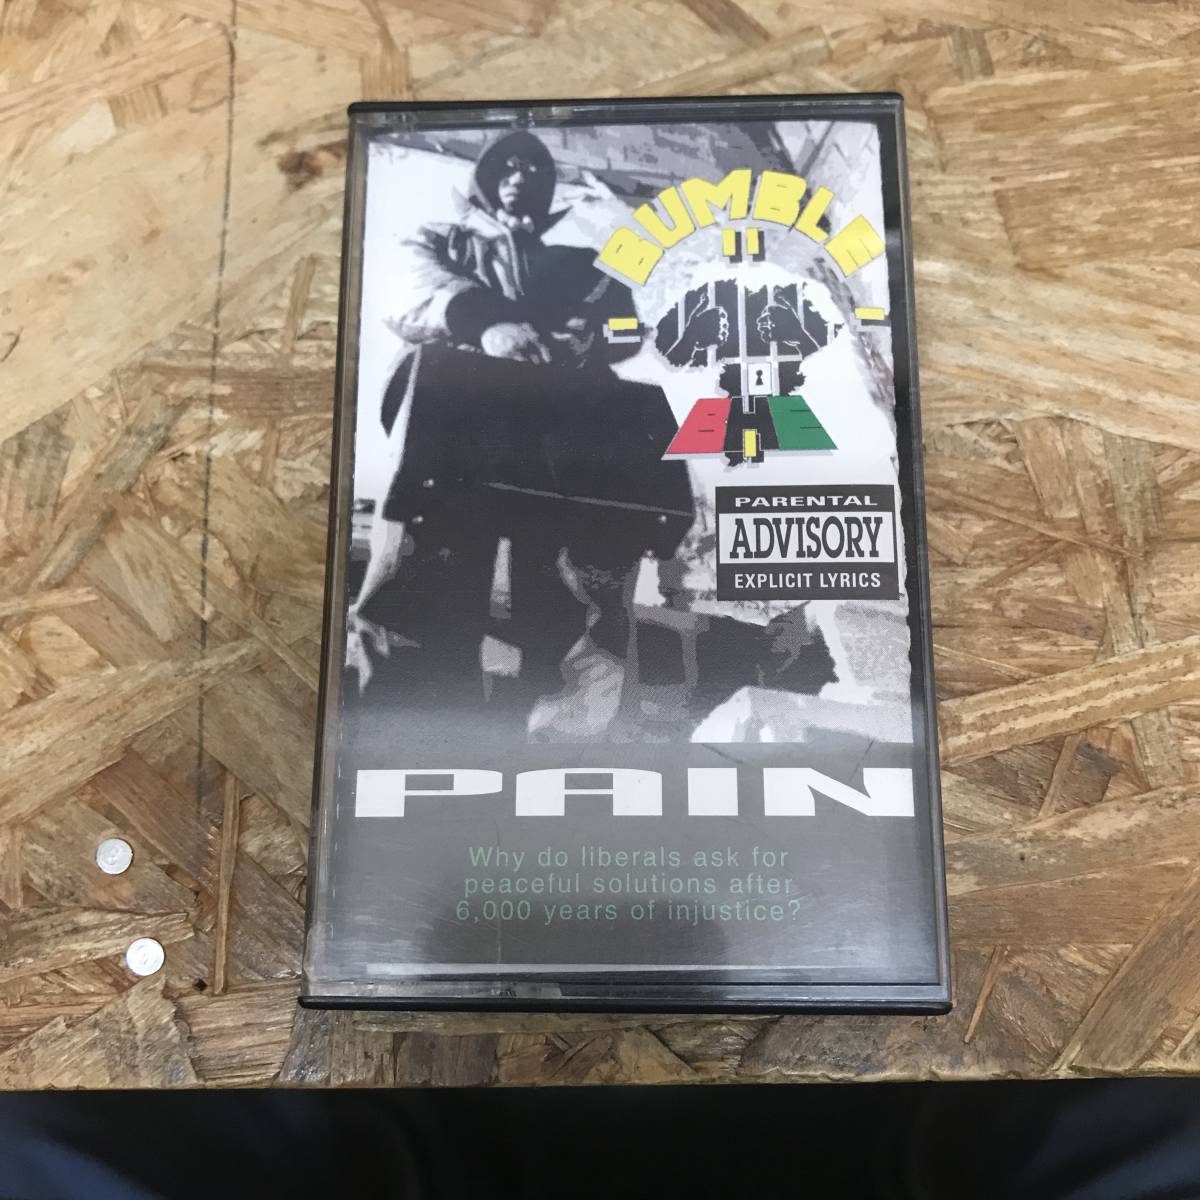 シHIPHOP,R&B BUMBLE B.H.E. - PAIN アルバム,RARE,入手困難 TAPE 中古品の画像1